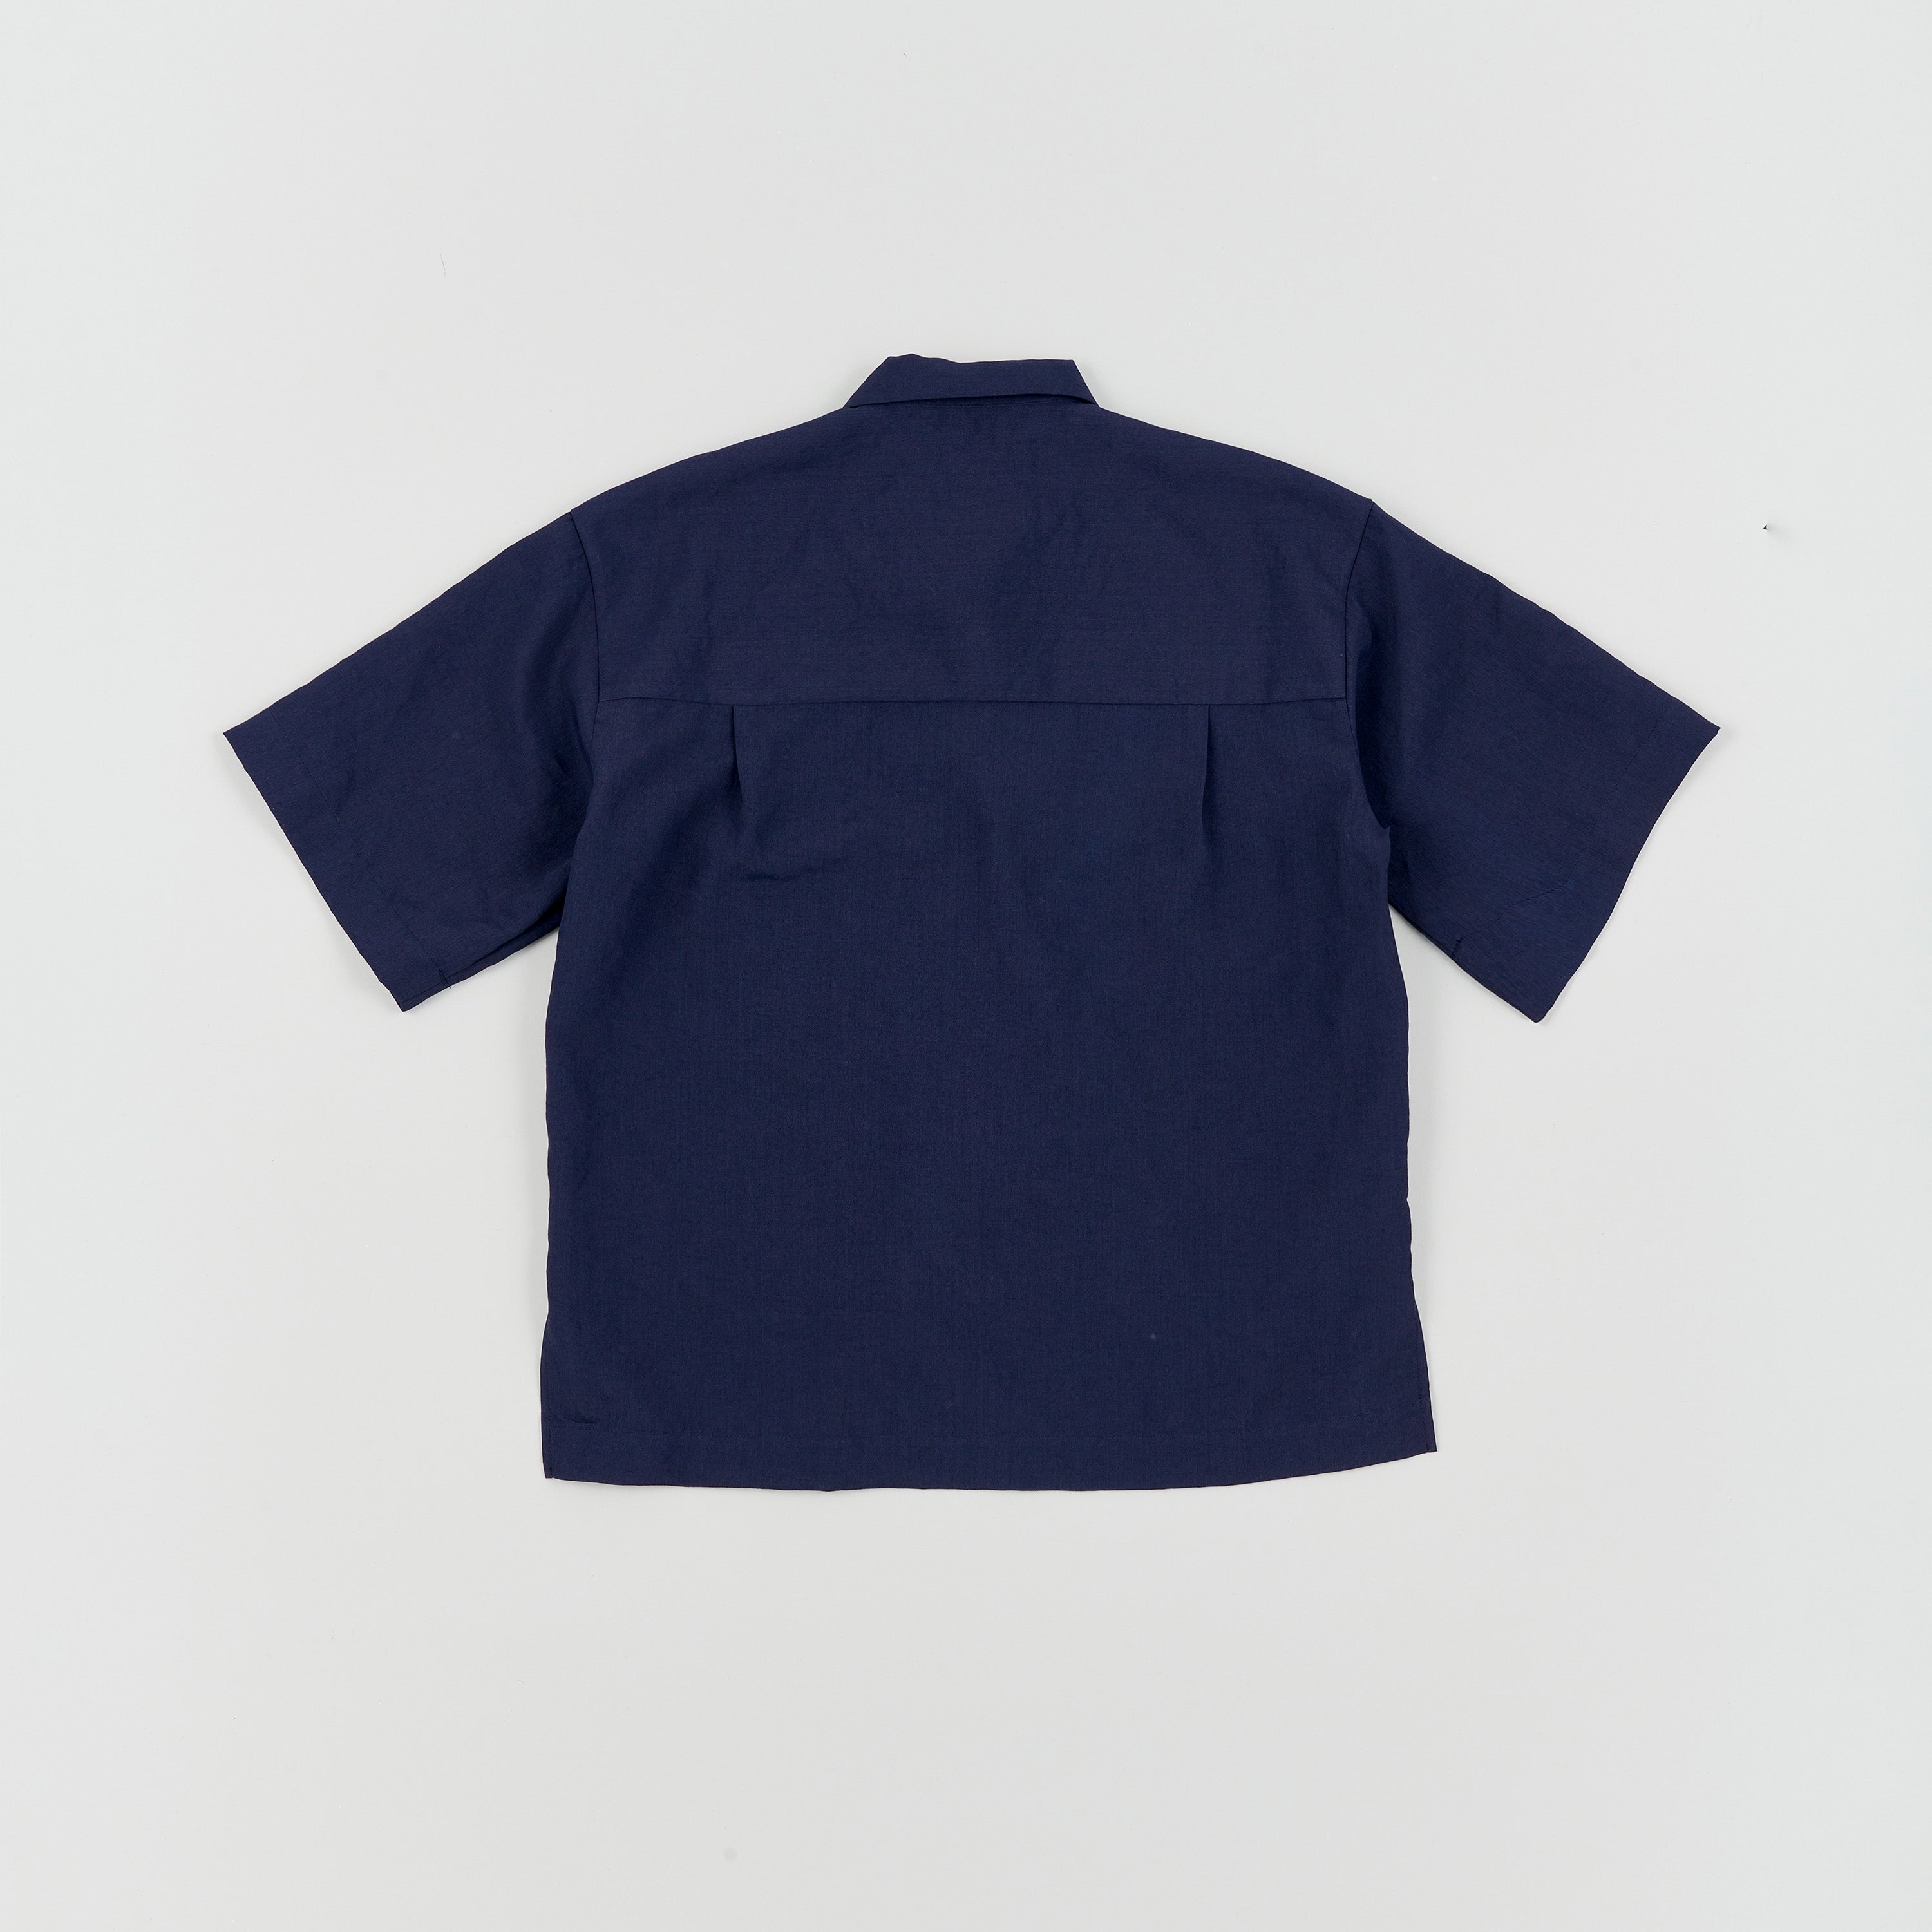 4 Seam Pockets Open Collar S/S Shirt[Navy]